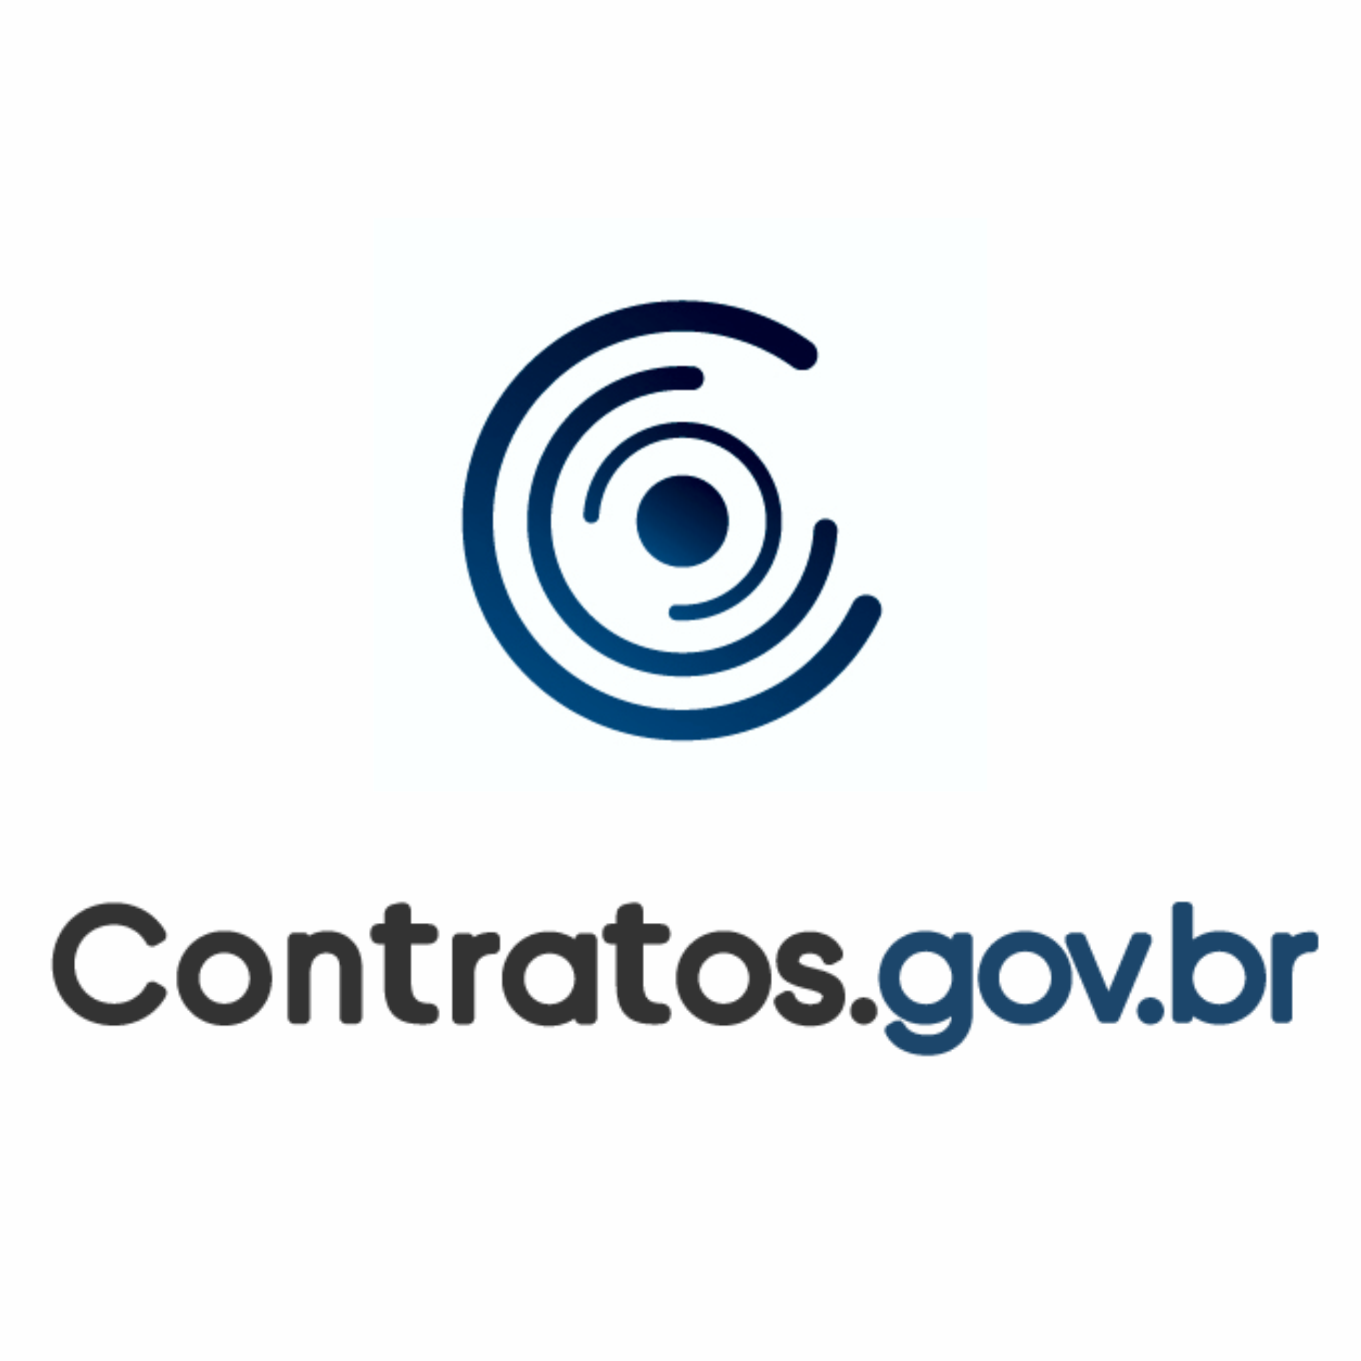 Treinamento Contratos.gov.br - TRE/RR